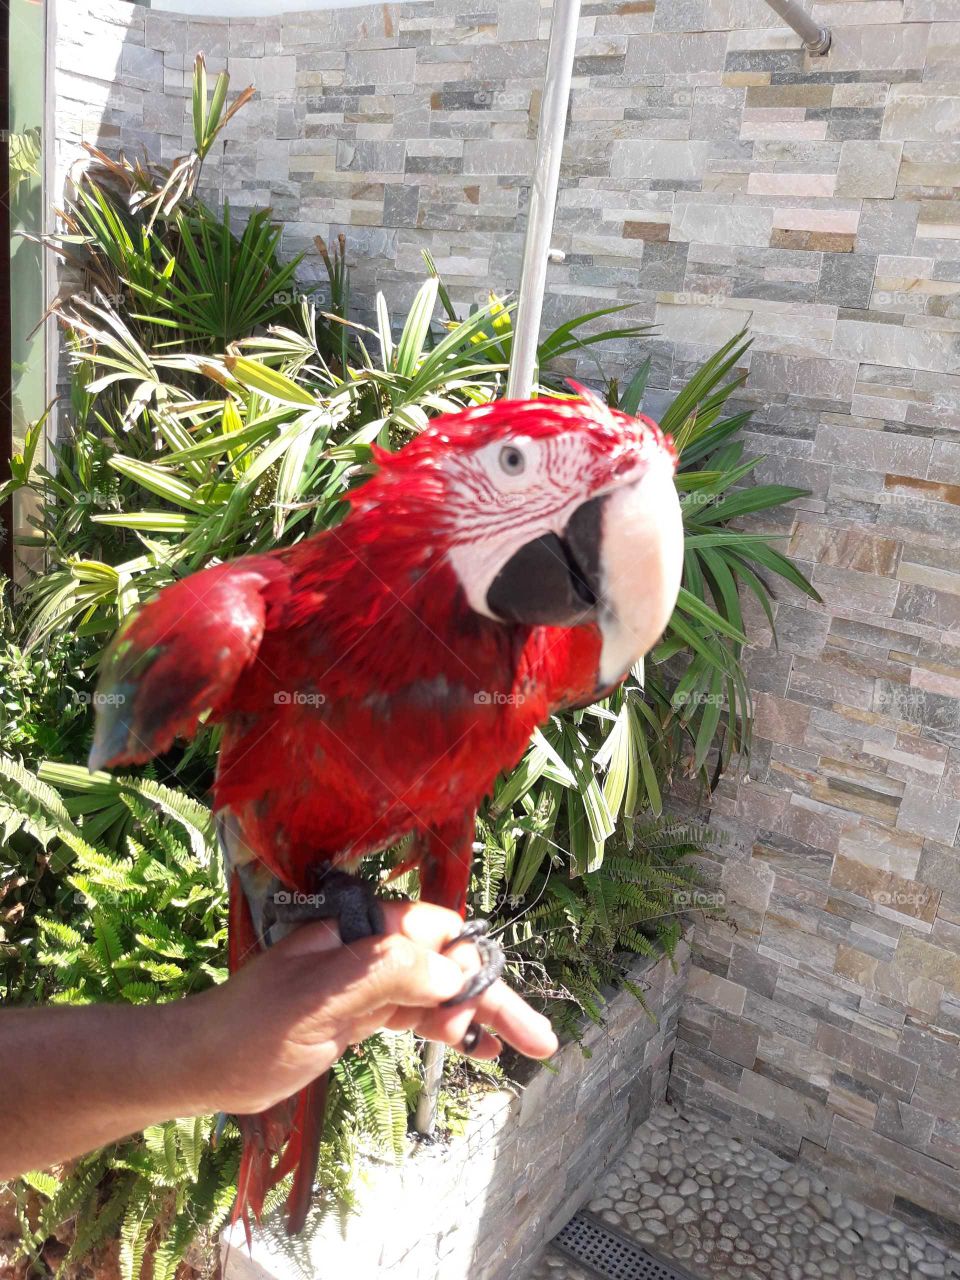 Wet happy parrot